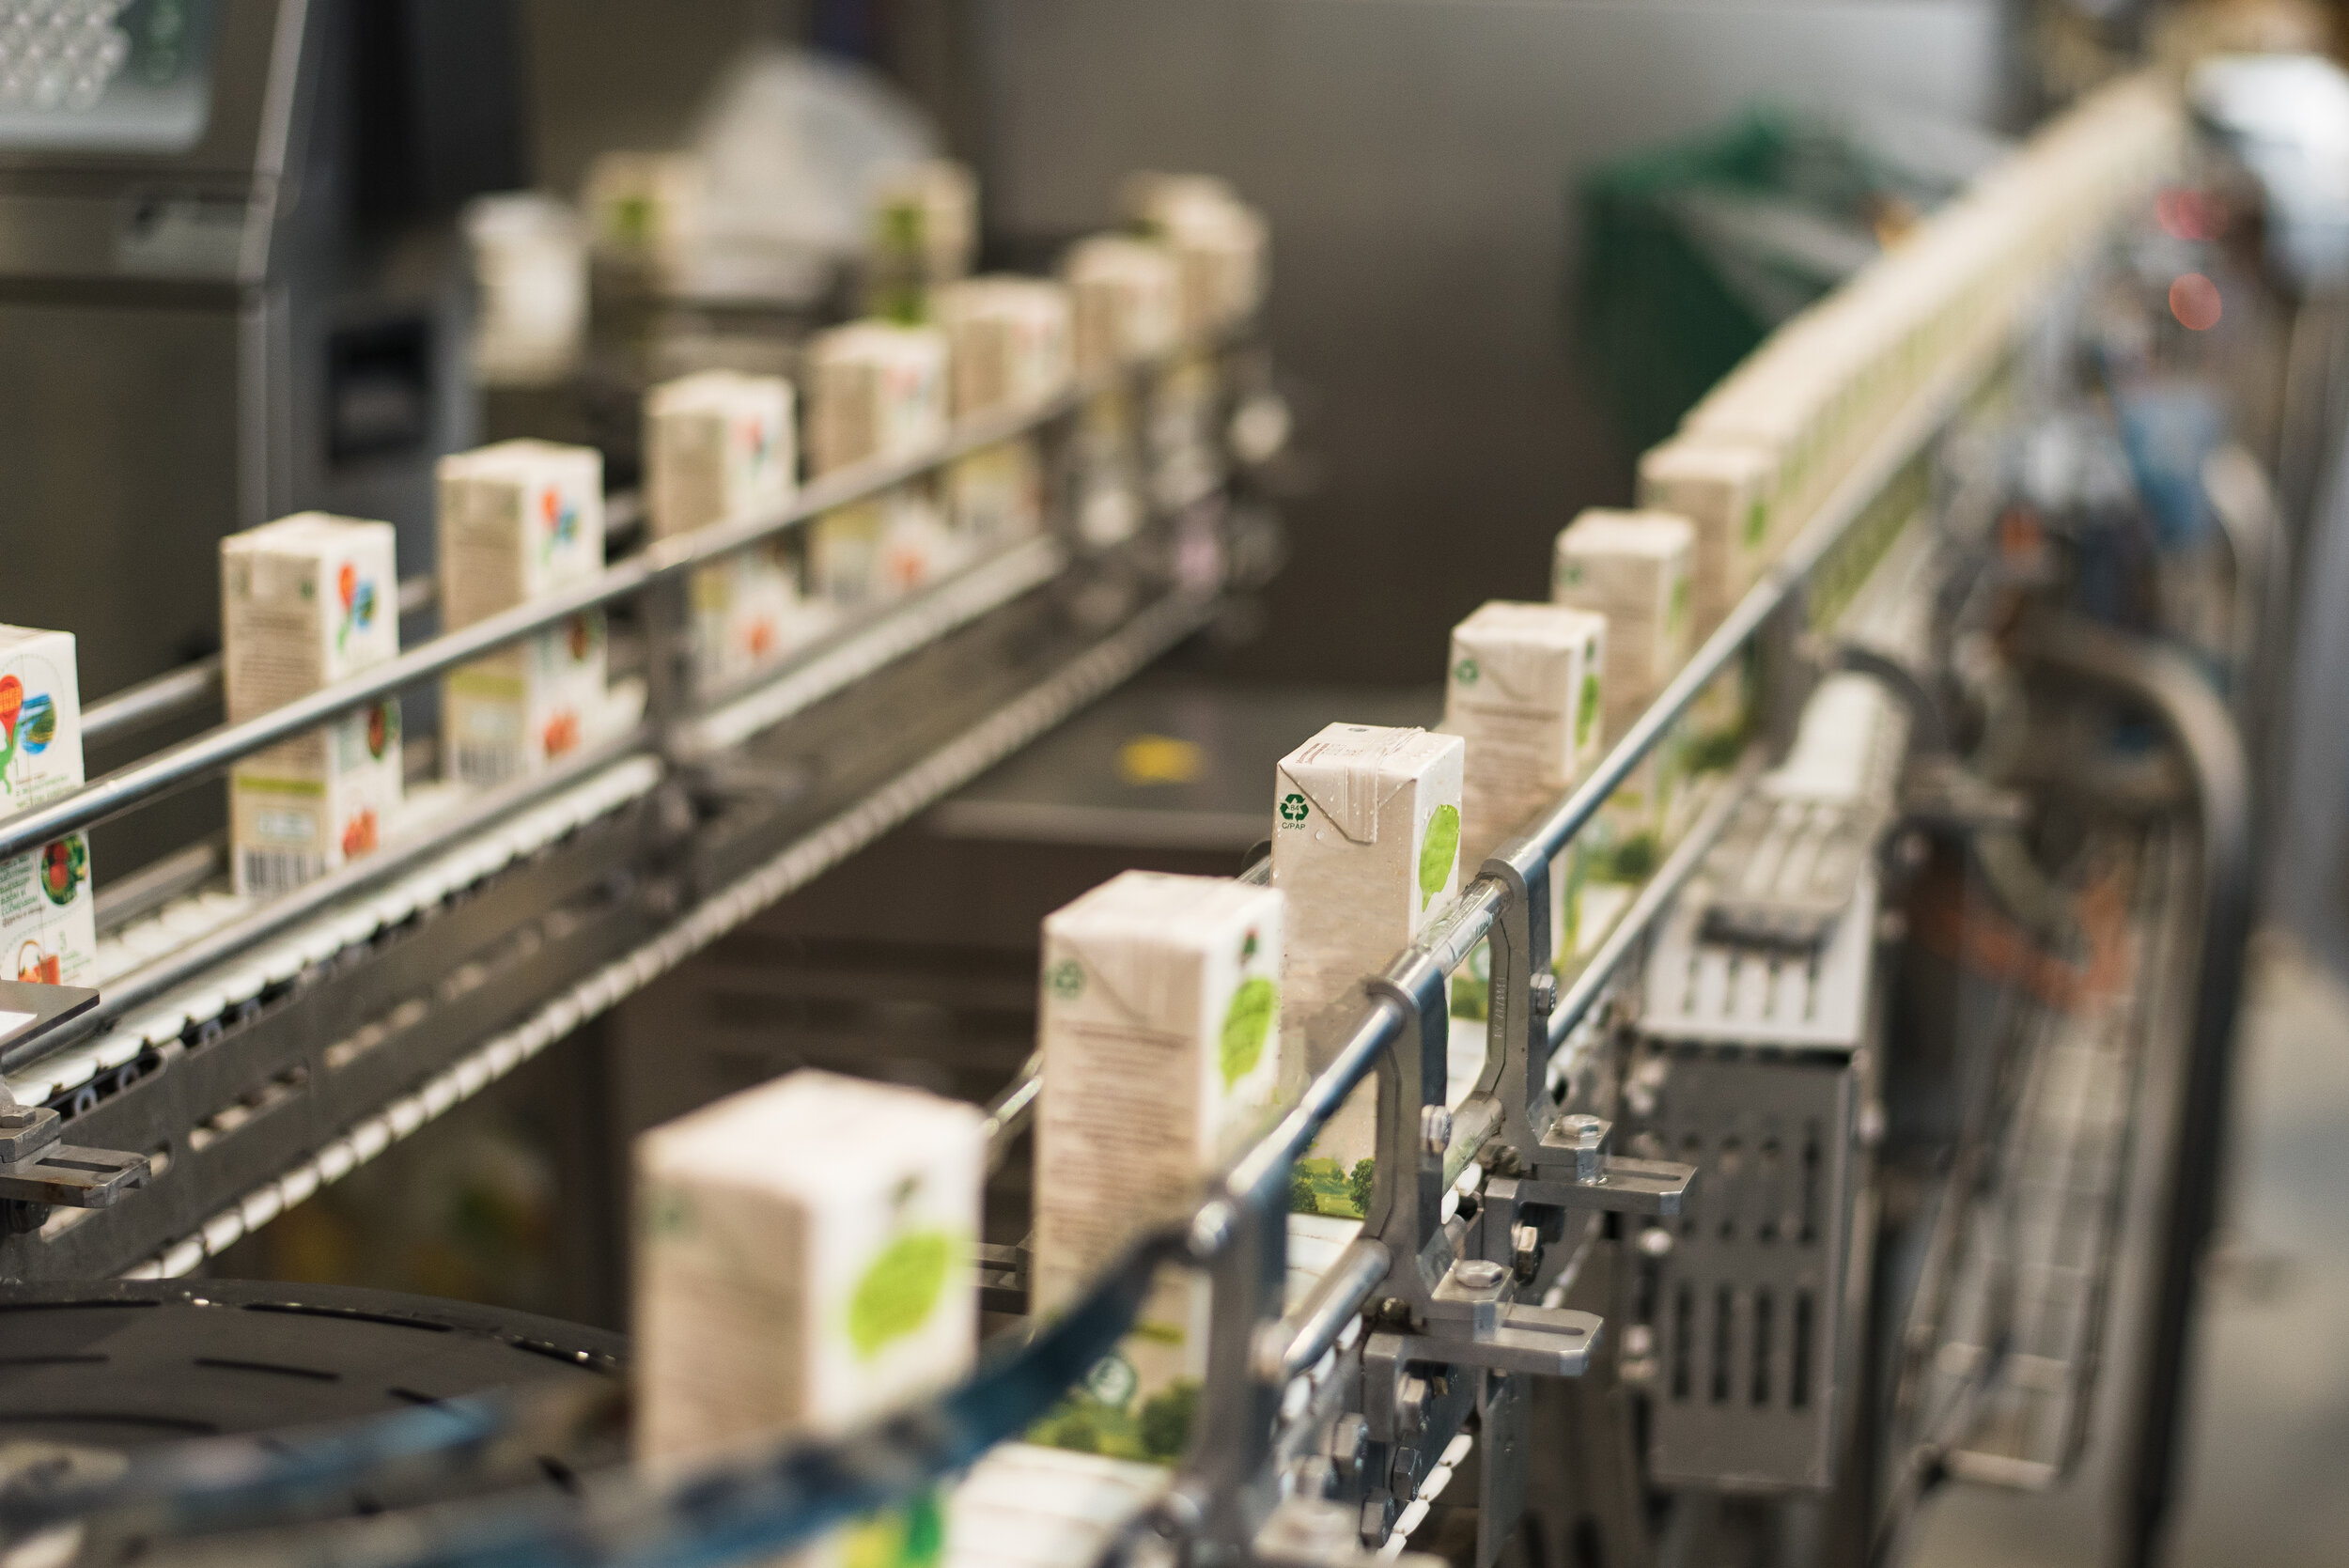 conveyor-plant-production-bottling-juices-cardboard-packaging.jpg